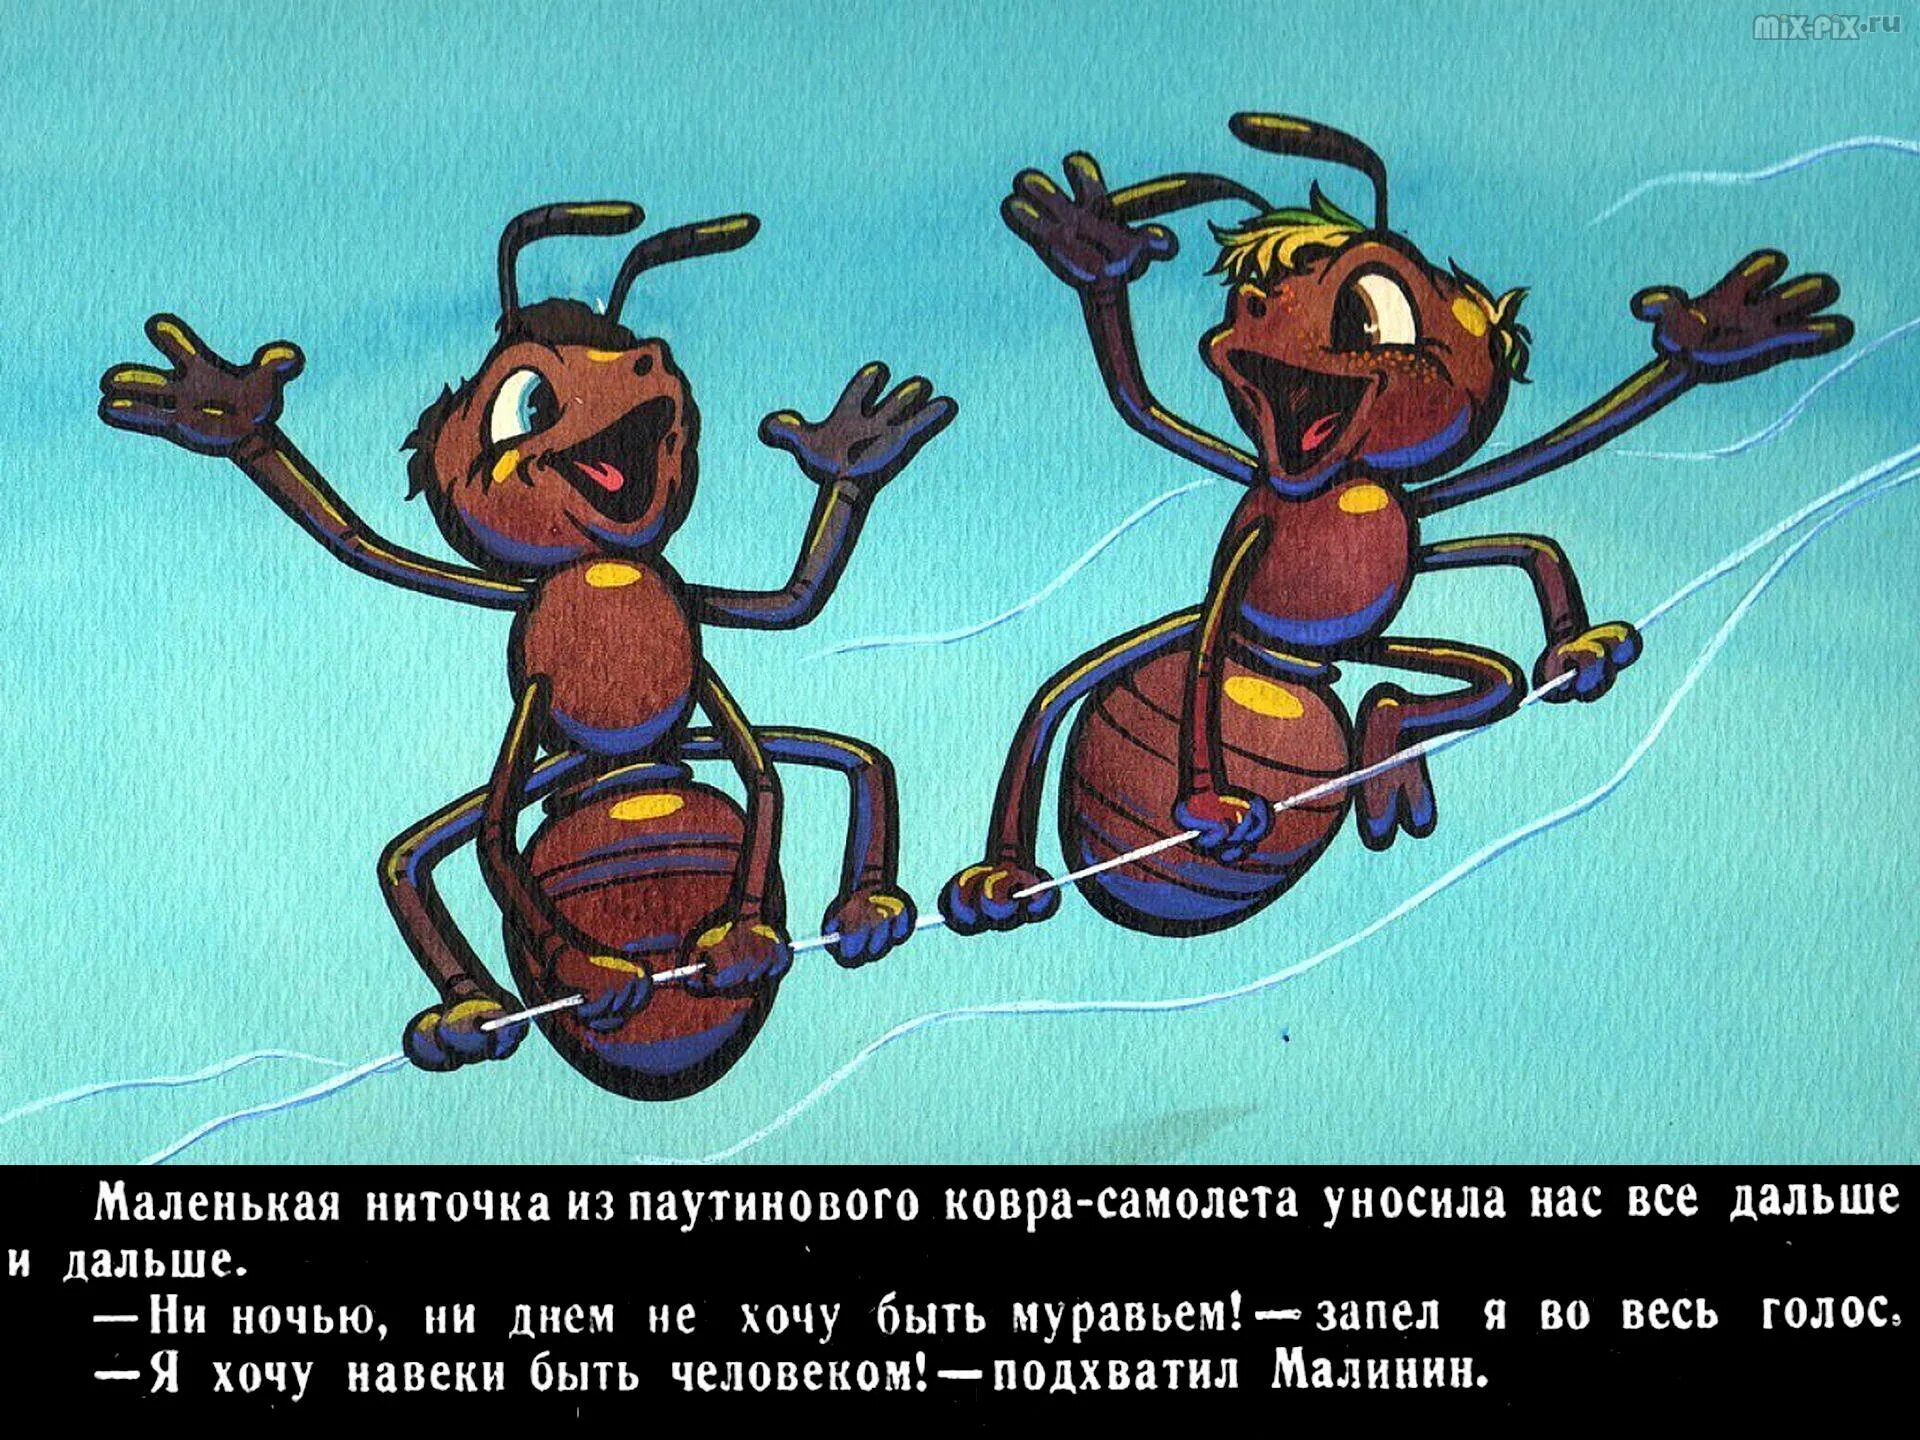 Повесть будь человеком. Баранкин муравей. Баранкин мультфильм муравей. Баранкин будь человеком мультфильм бабочка. Баранкин будь человеком муравьи.